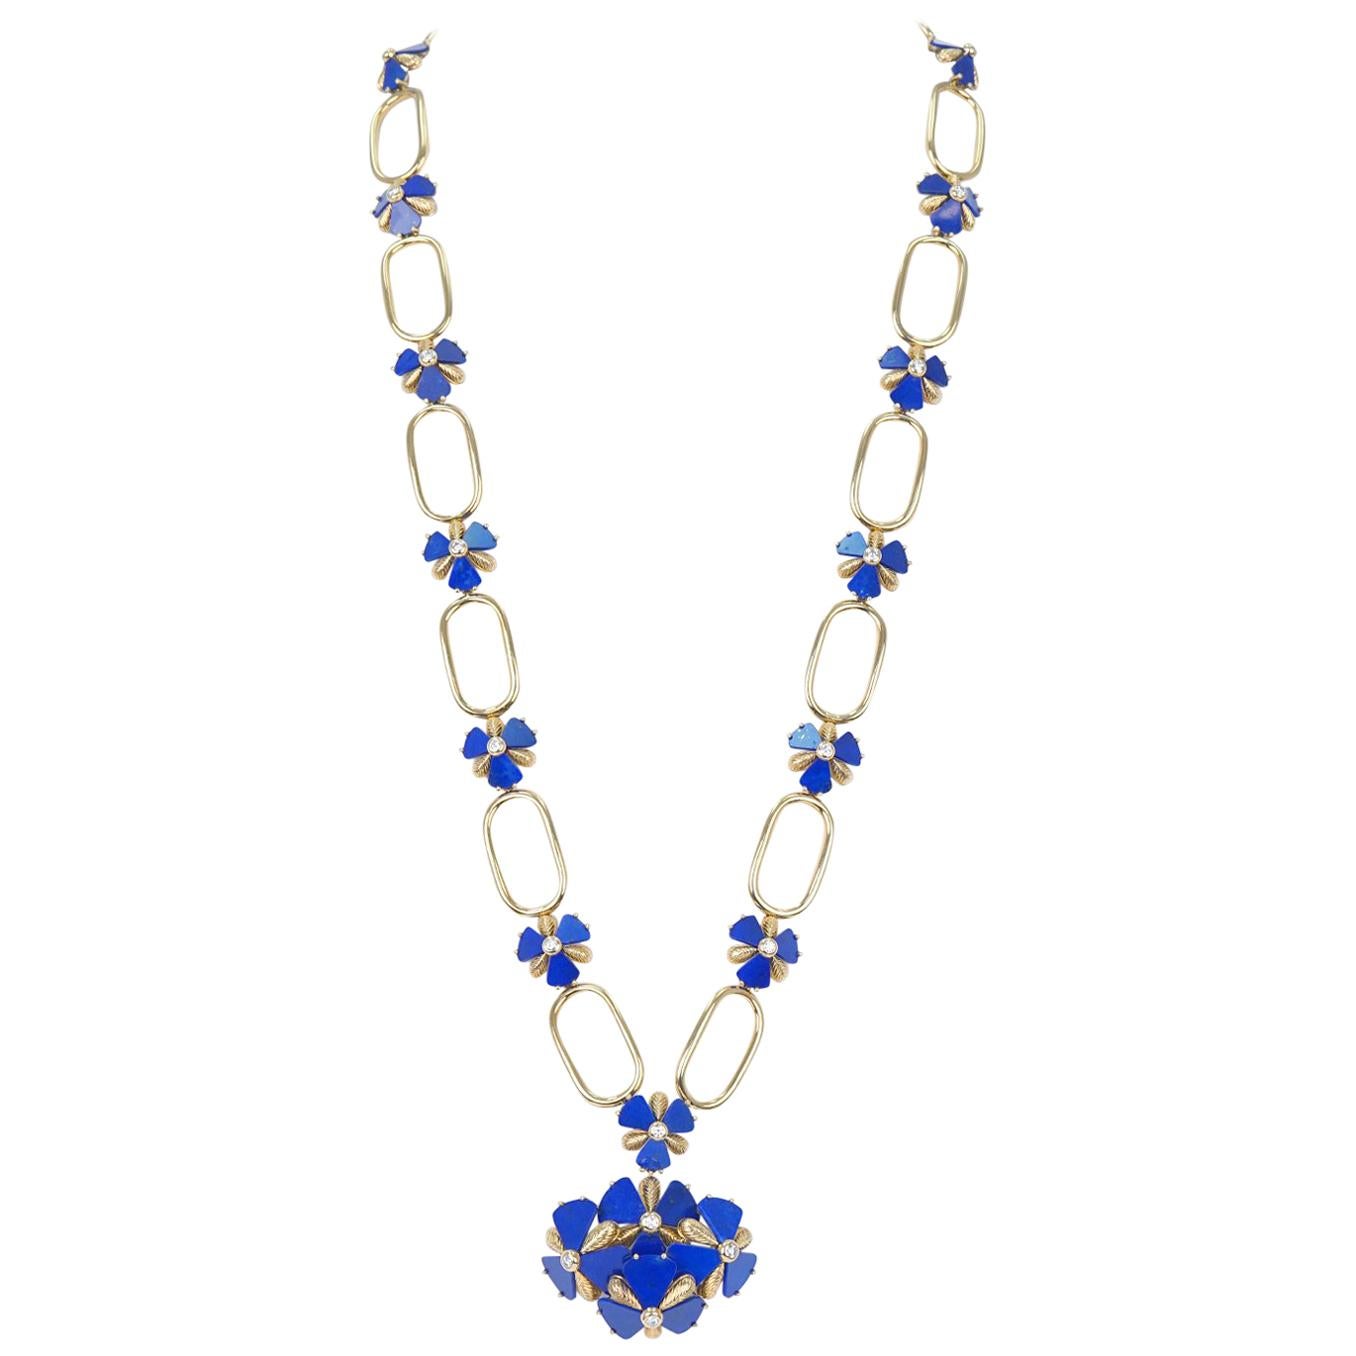 Fabulous 1960s Pop Art Lapis and Diamond Set Gold Necklace